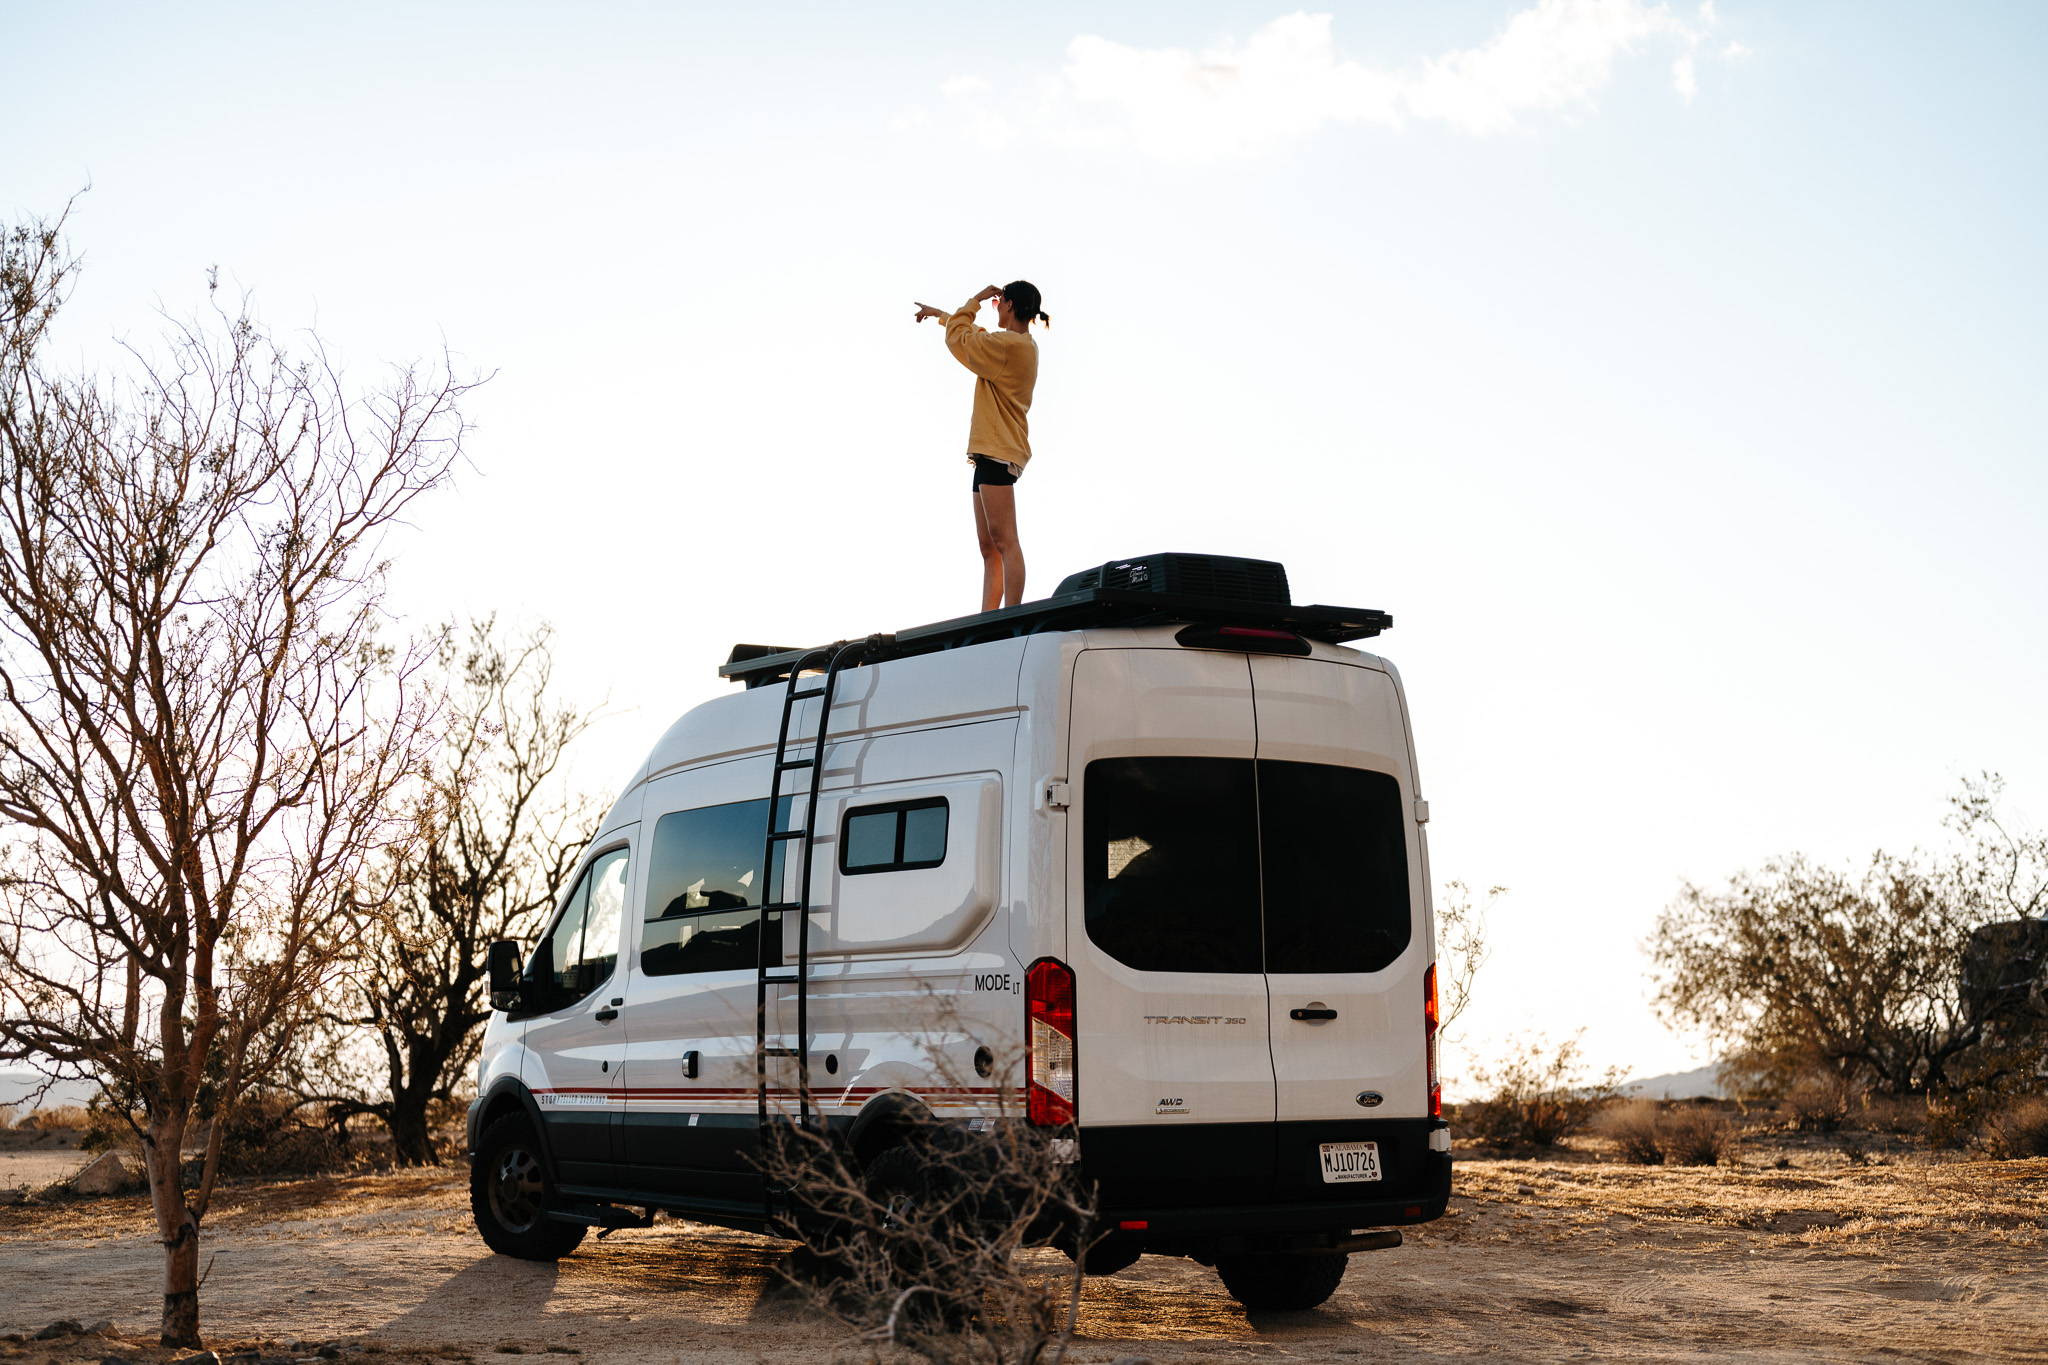 Gracie stands on a Storyteller Overland MODE LT camper van in Joshua Tree National Park.